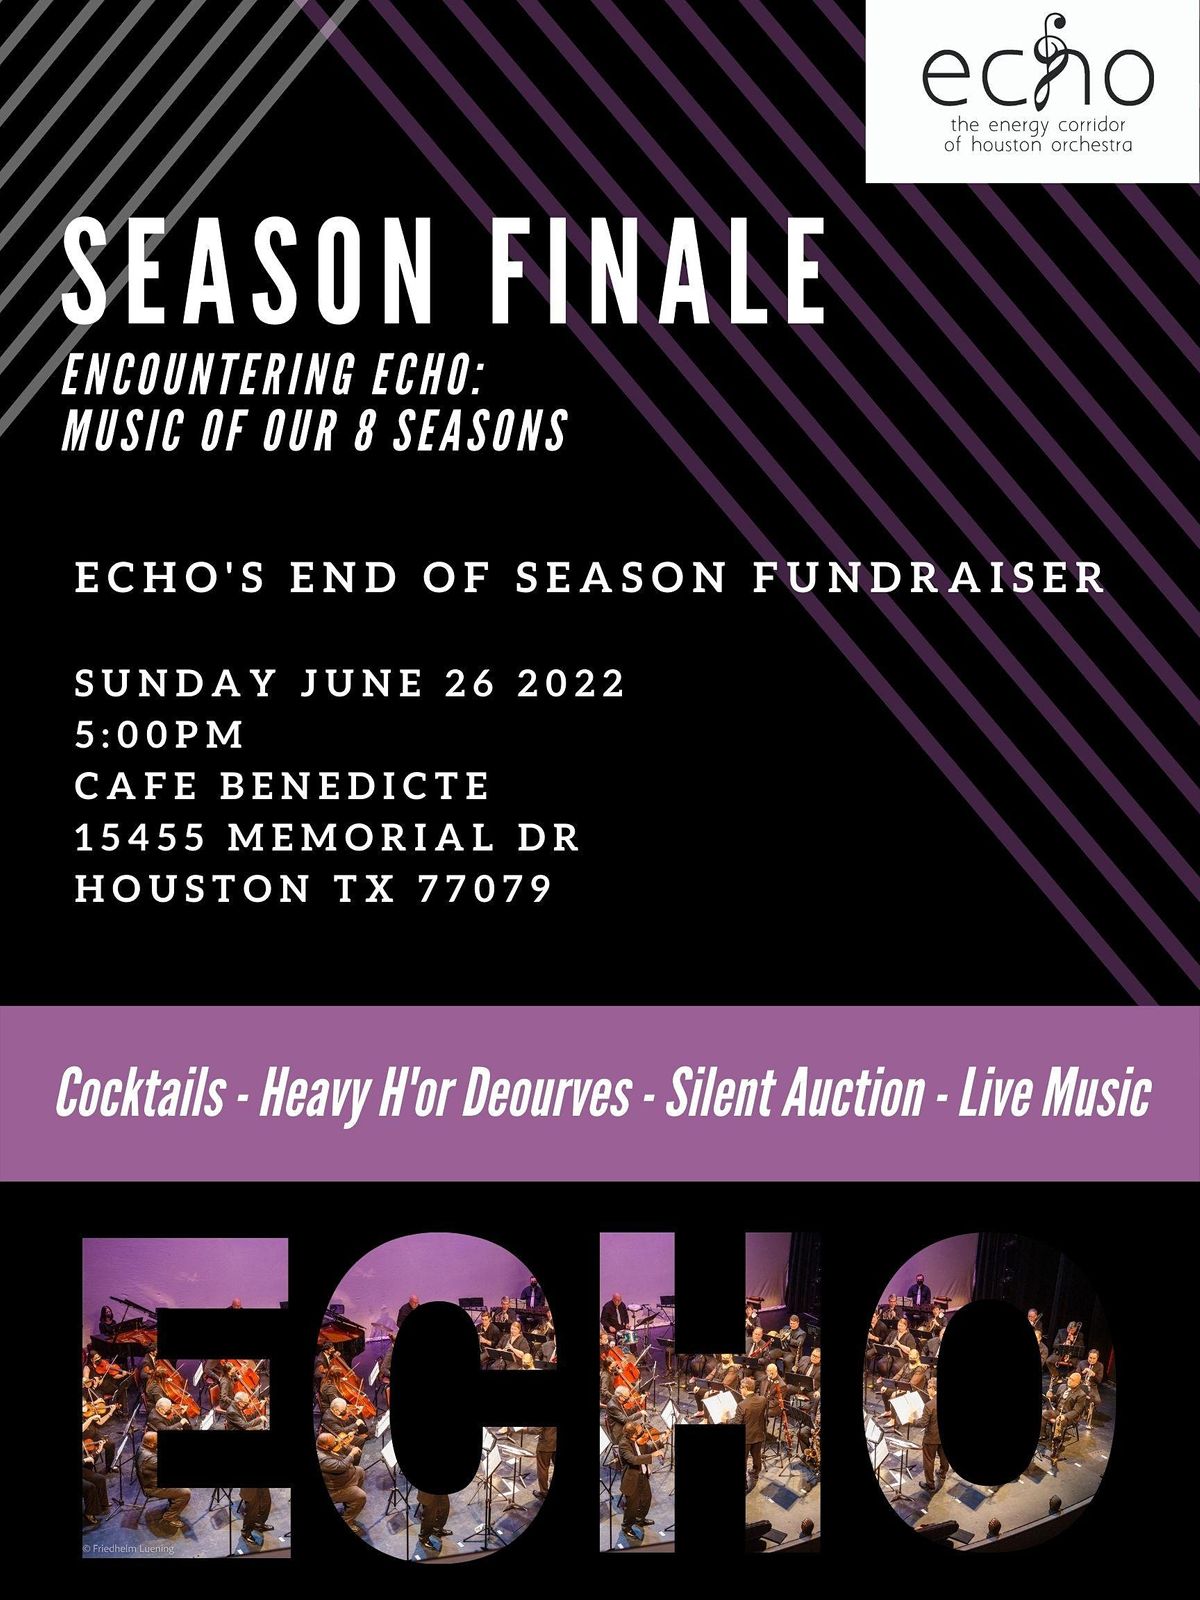 Season Finale: Encountering ECHO fundraiser